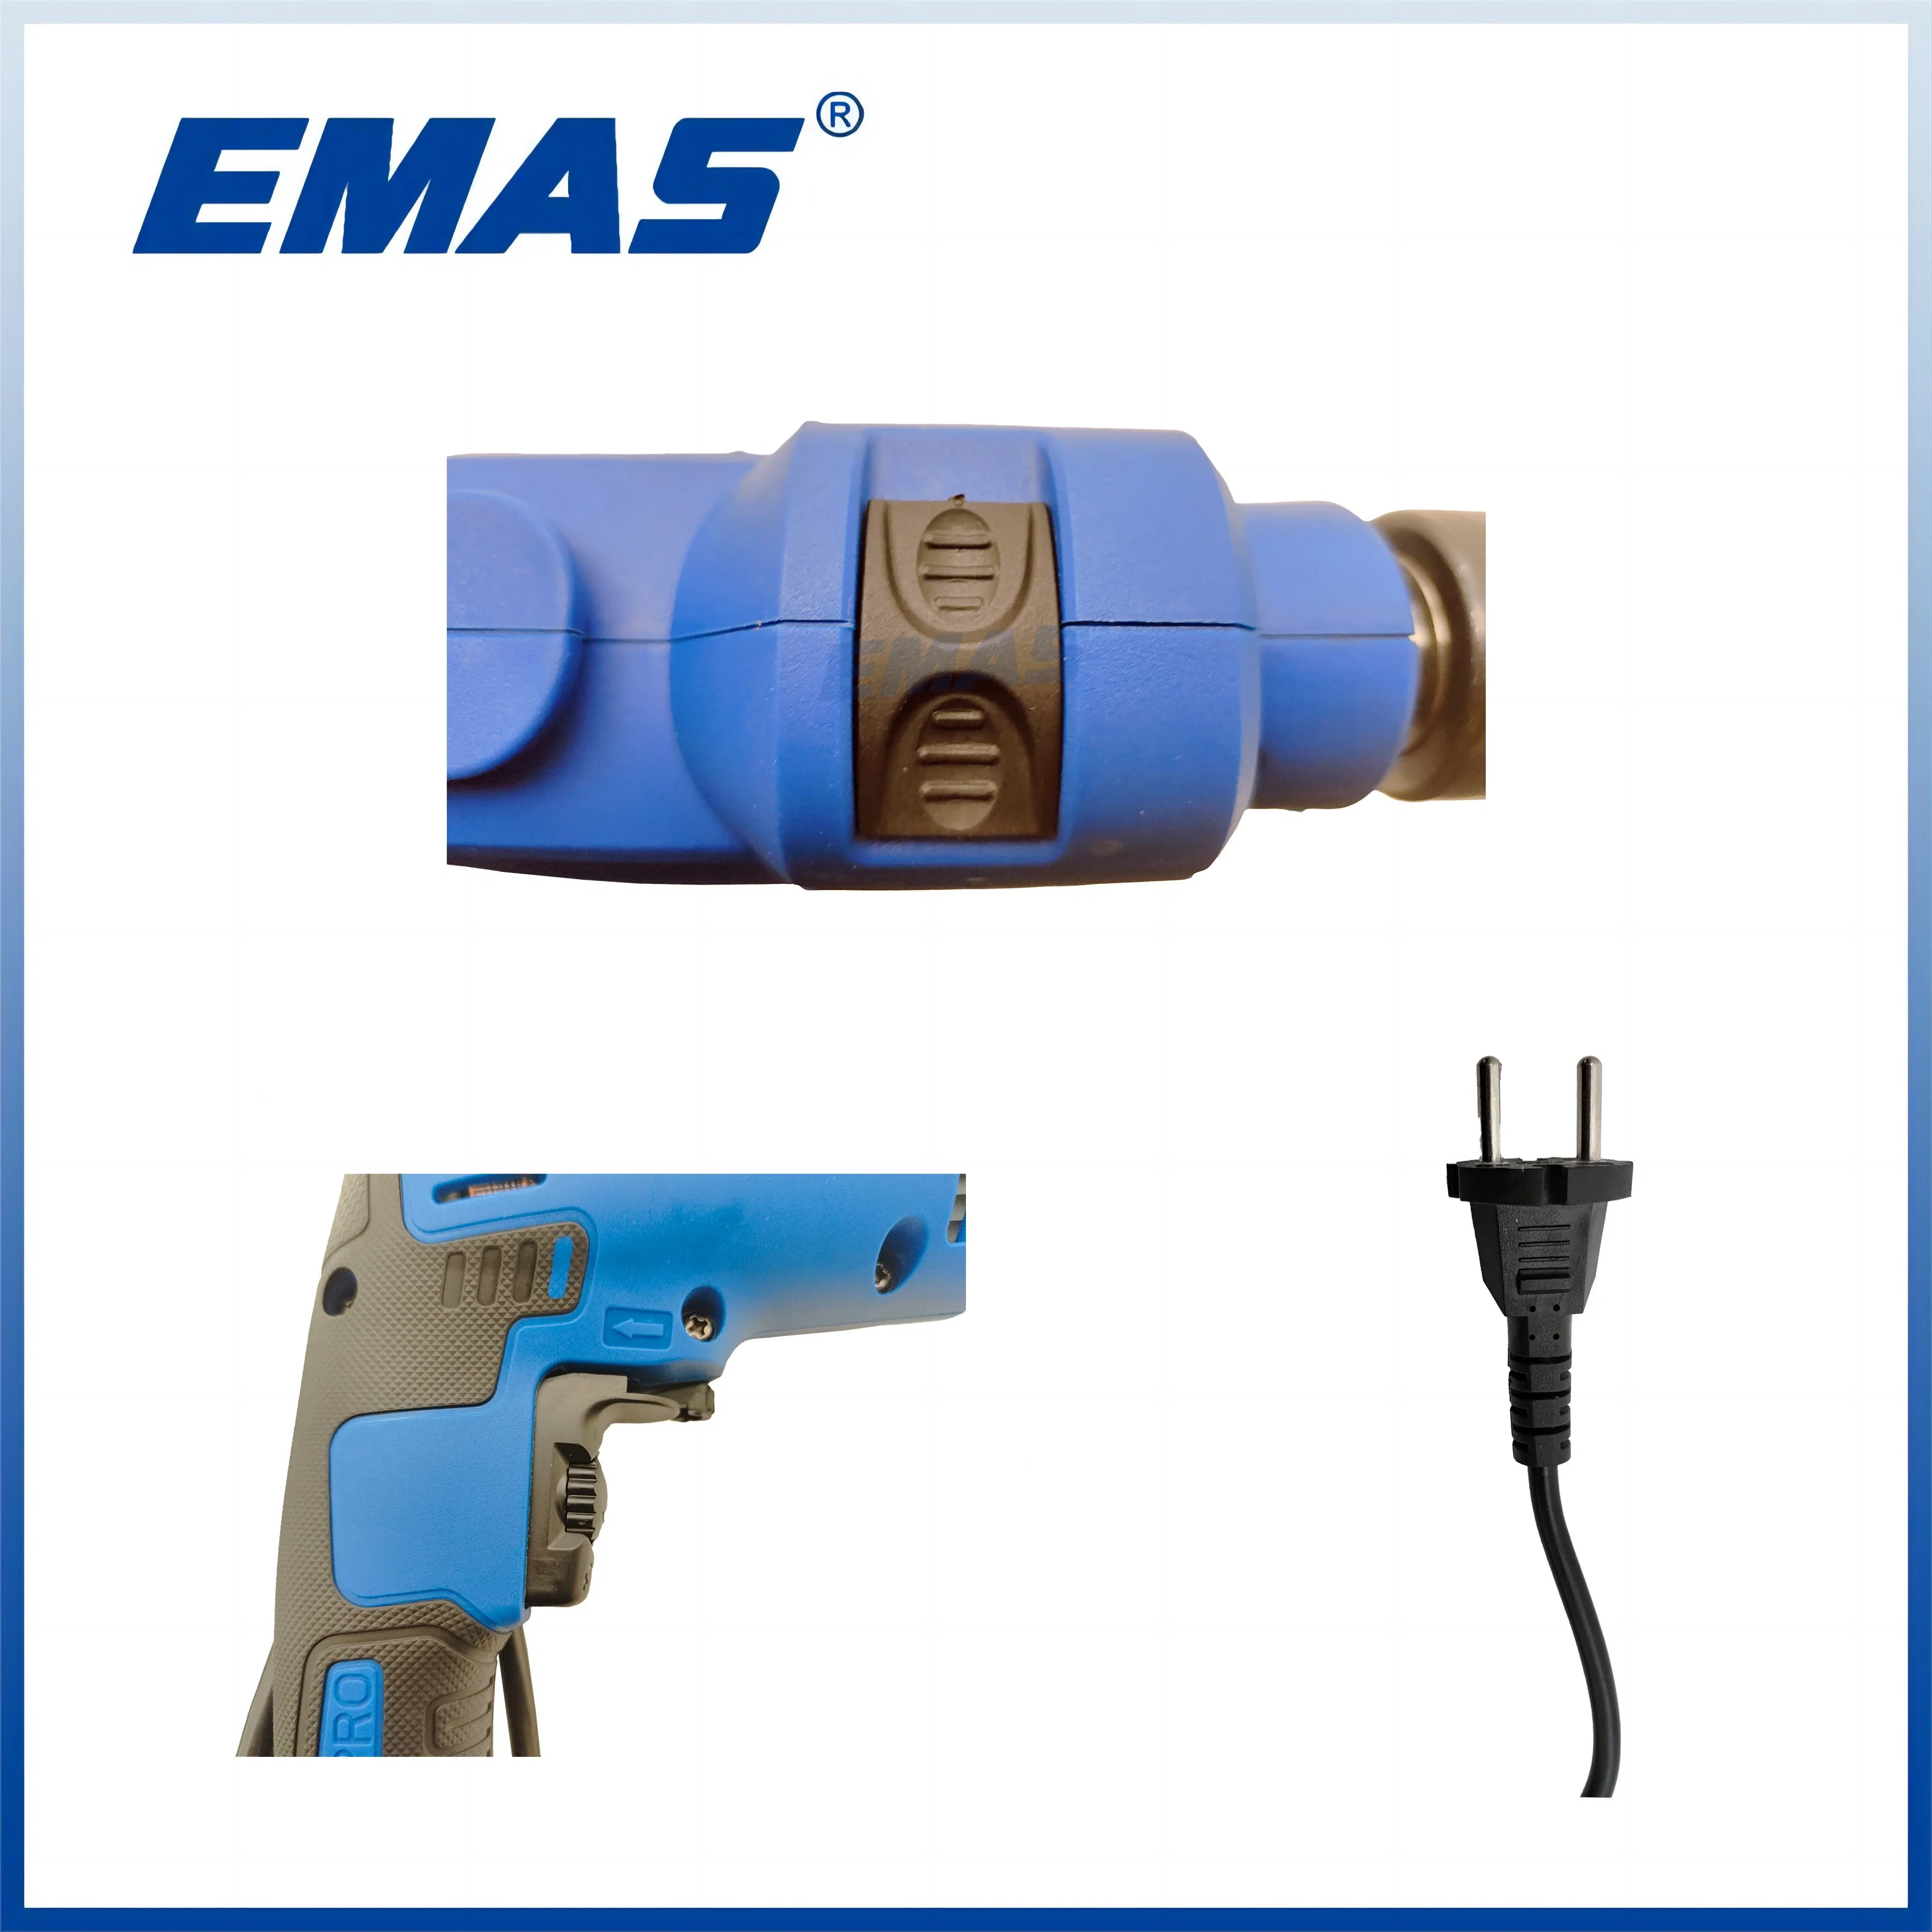 EMAS Power Tools 220V Elektrische Bohrmaschine 650W Schlagbohrmaschine 13mm